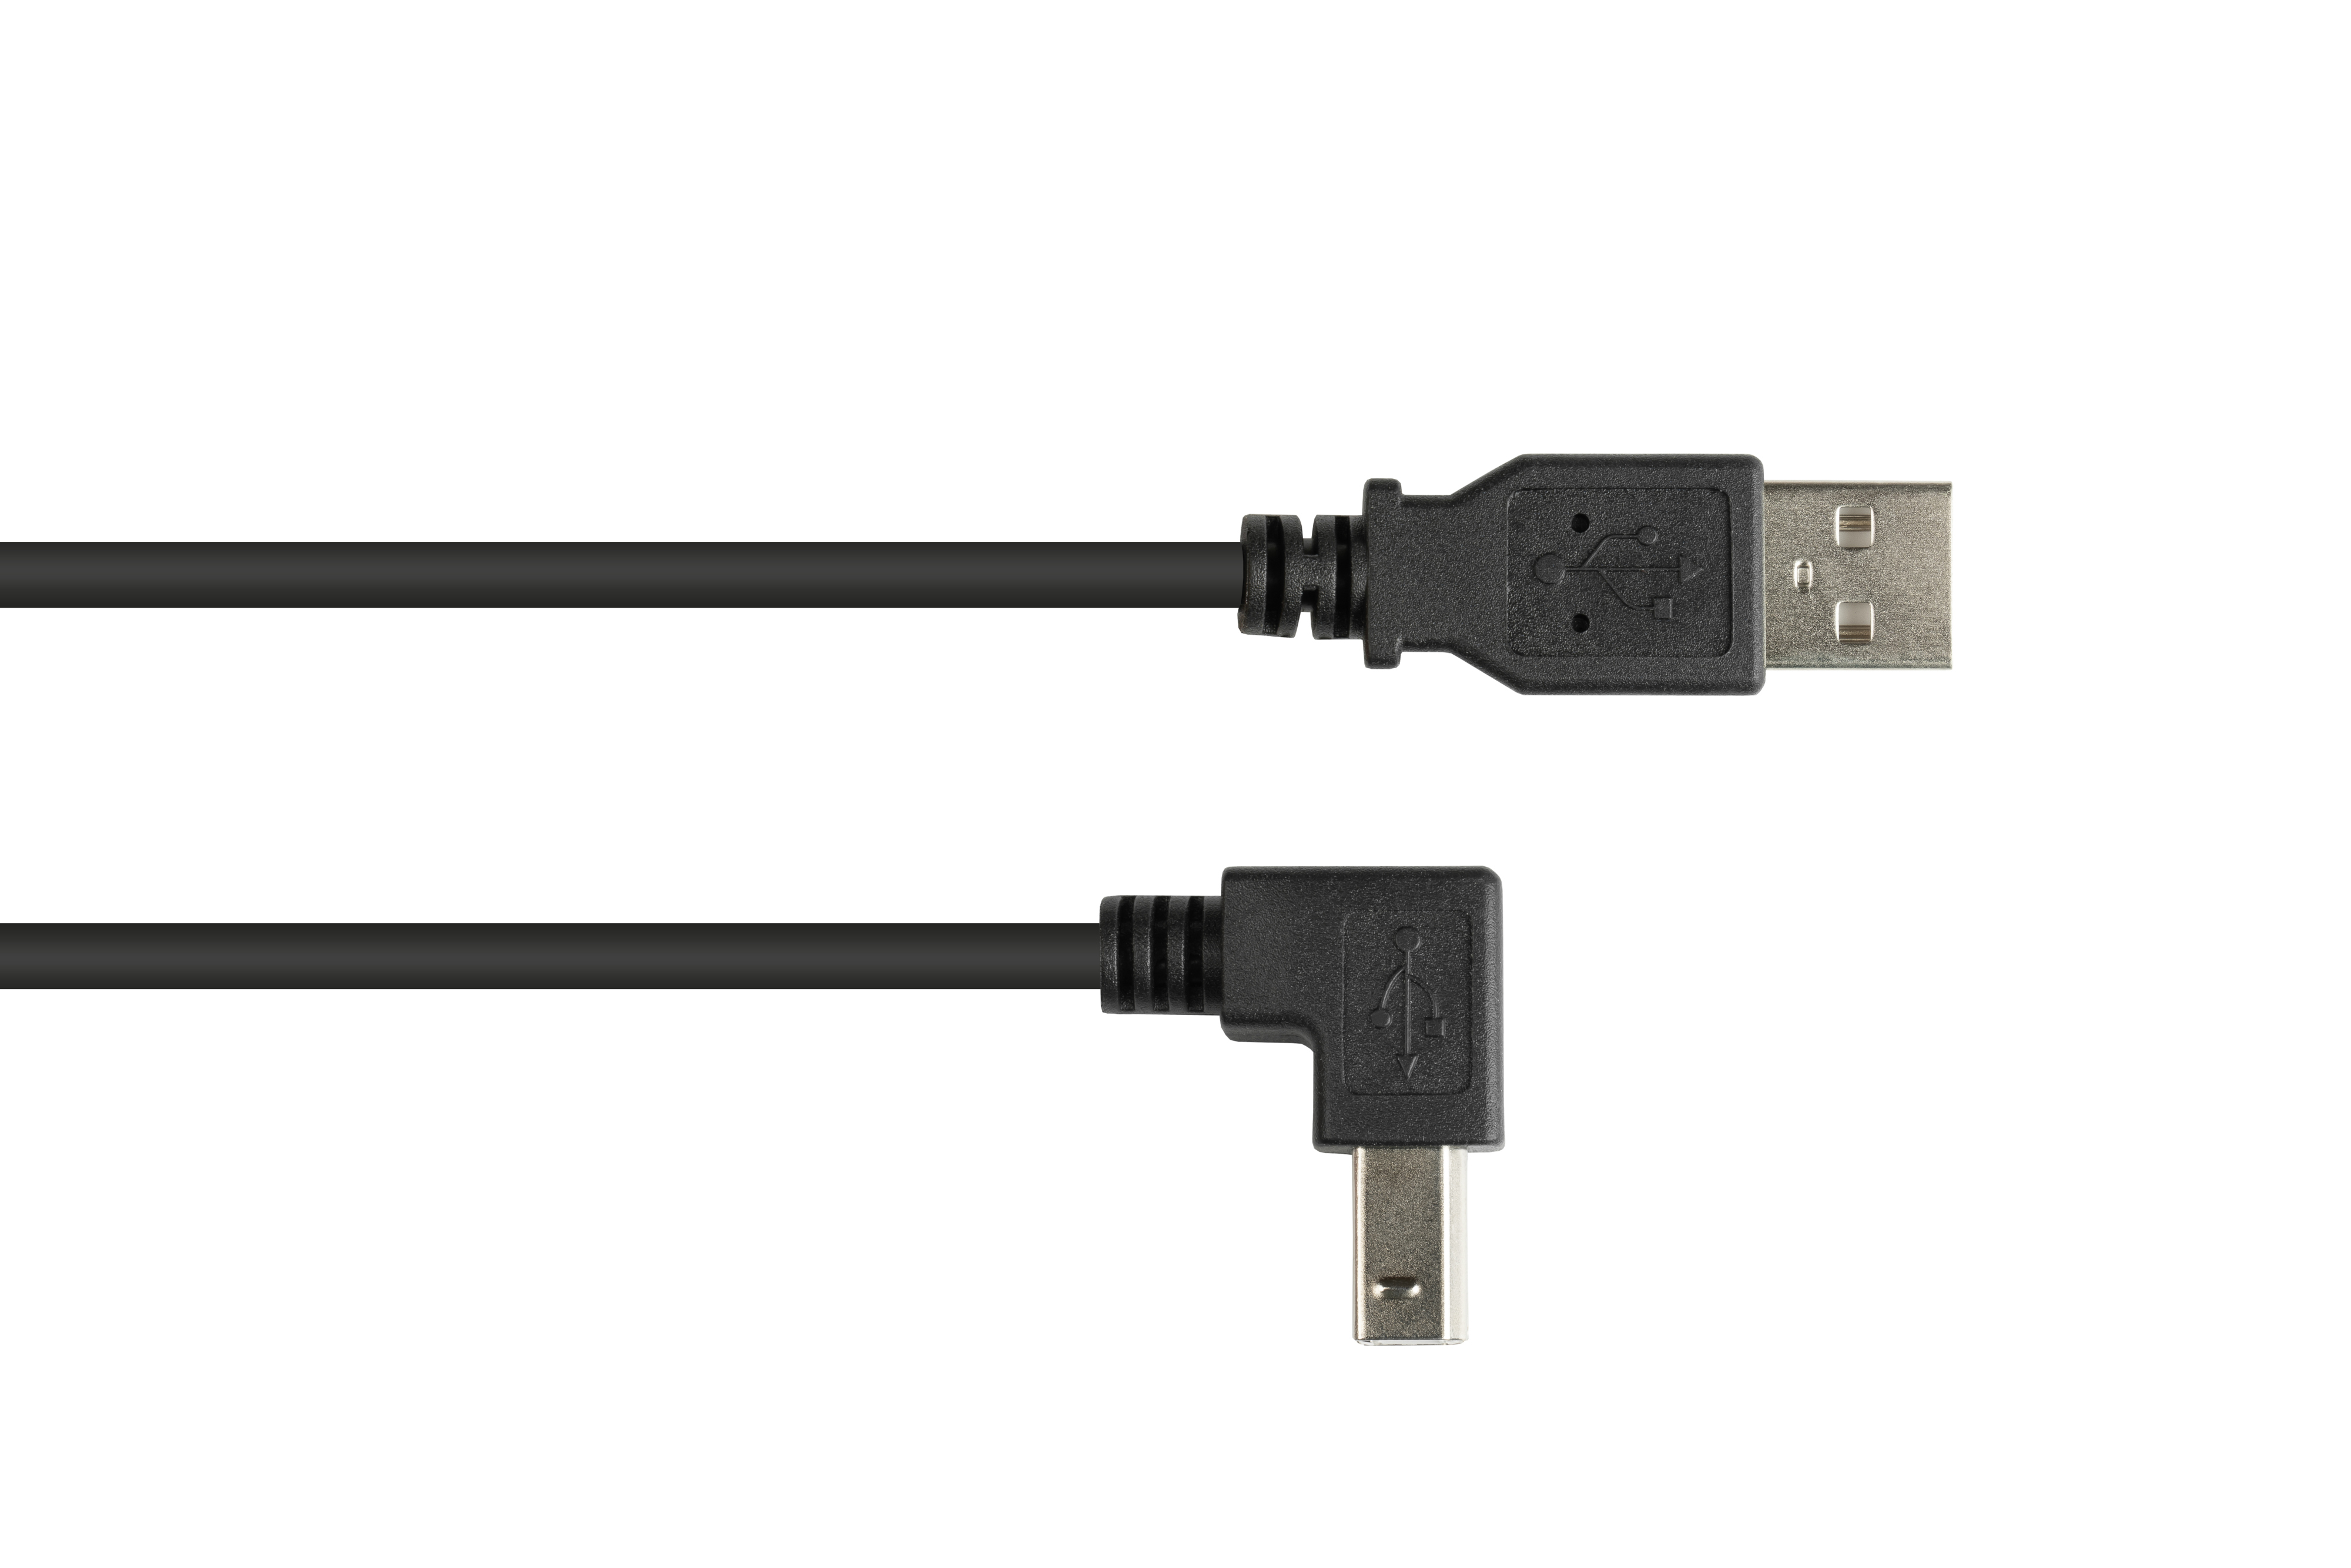 2.0 Anschlusskabel A USB CONNECTIONS Stecker nach GOOD gewinkelt unten Stecker B an